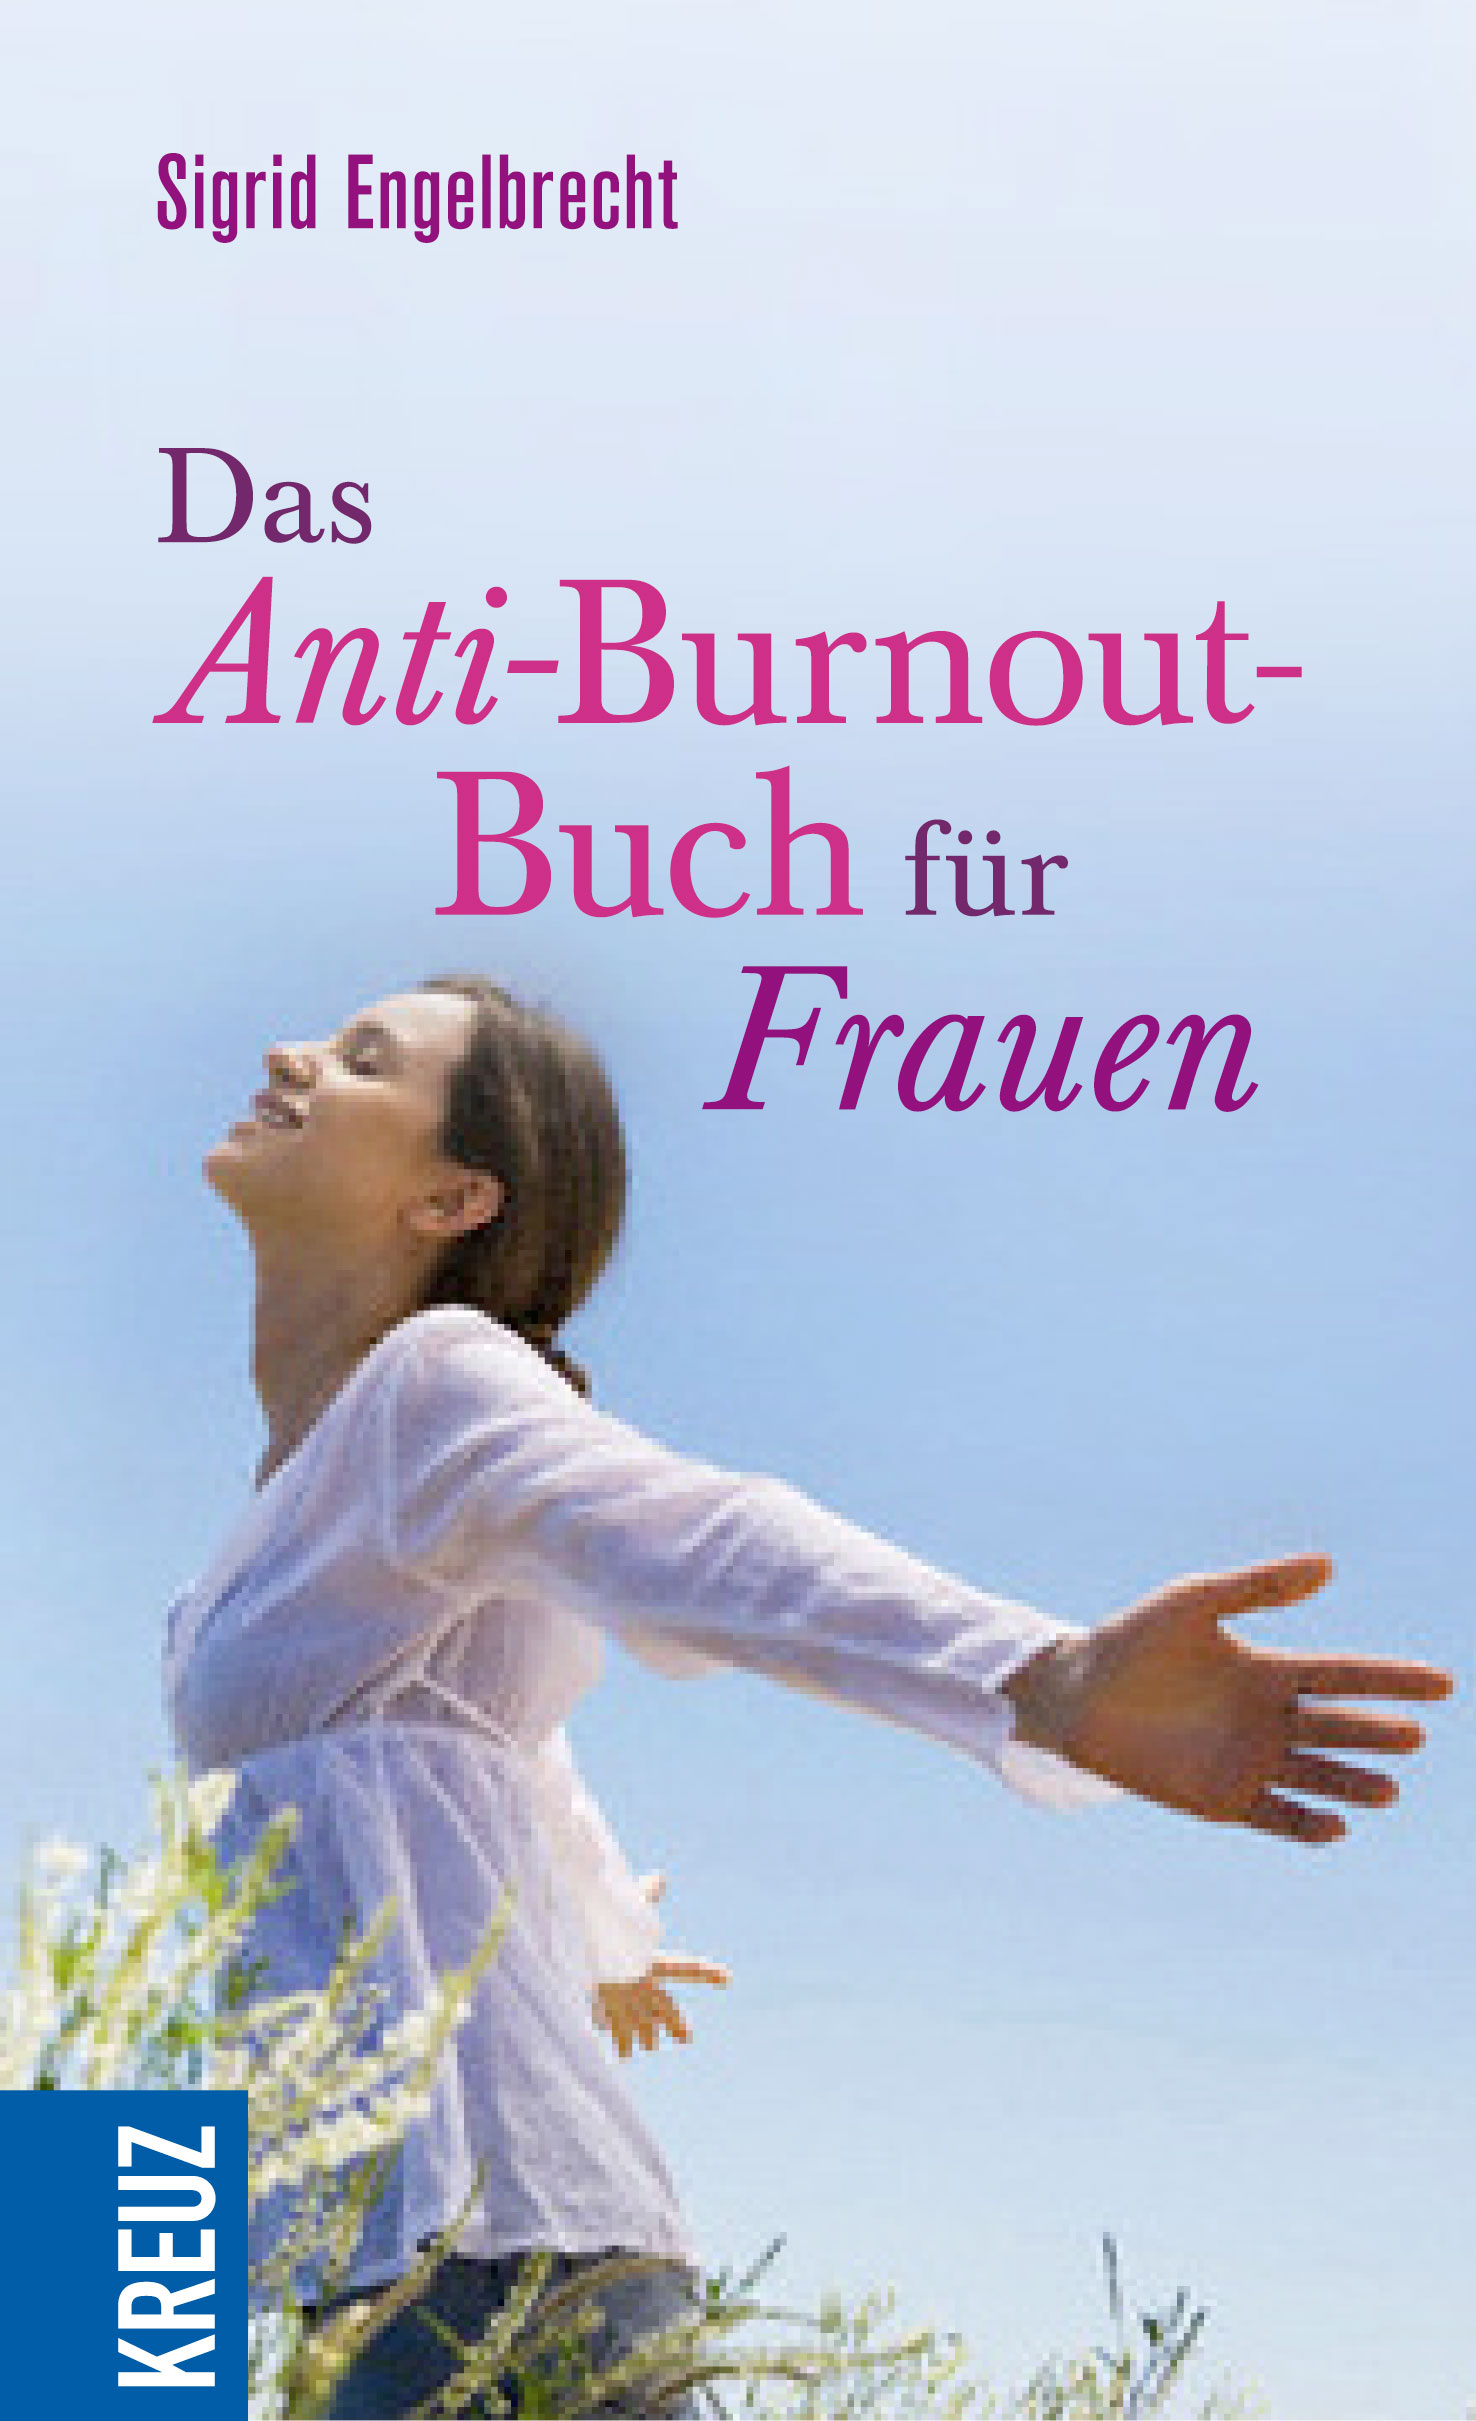 Das Anti-Burnout-Buch für Frauen